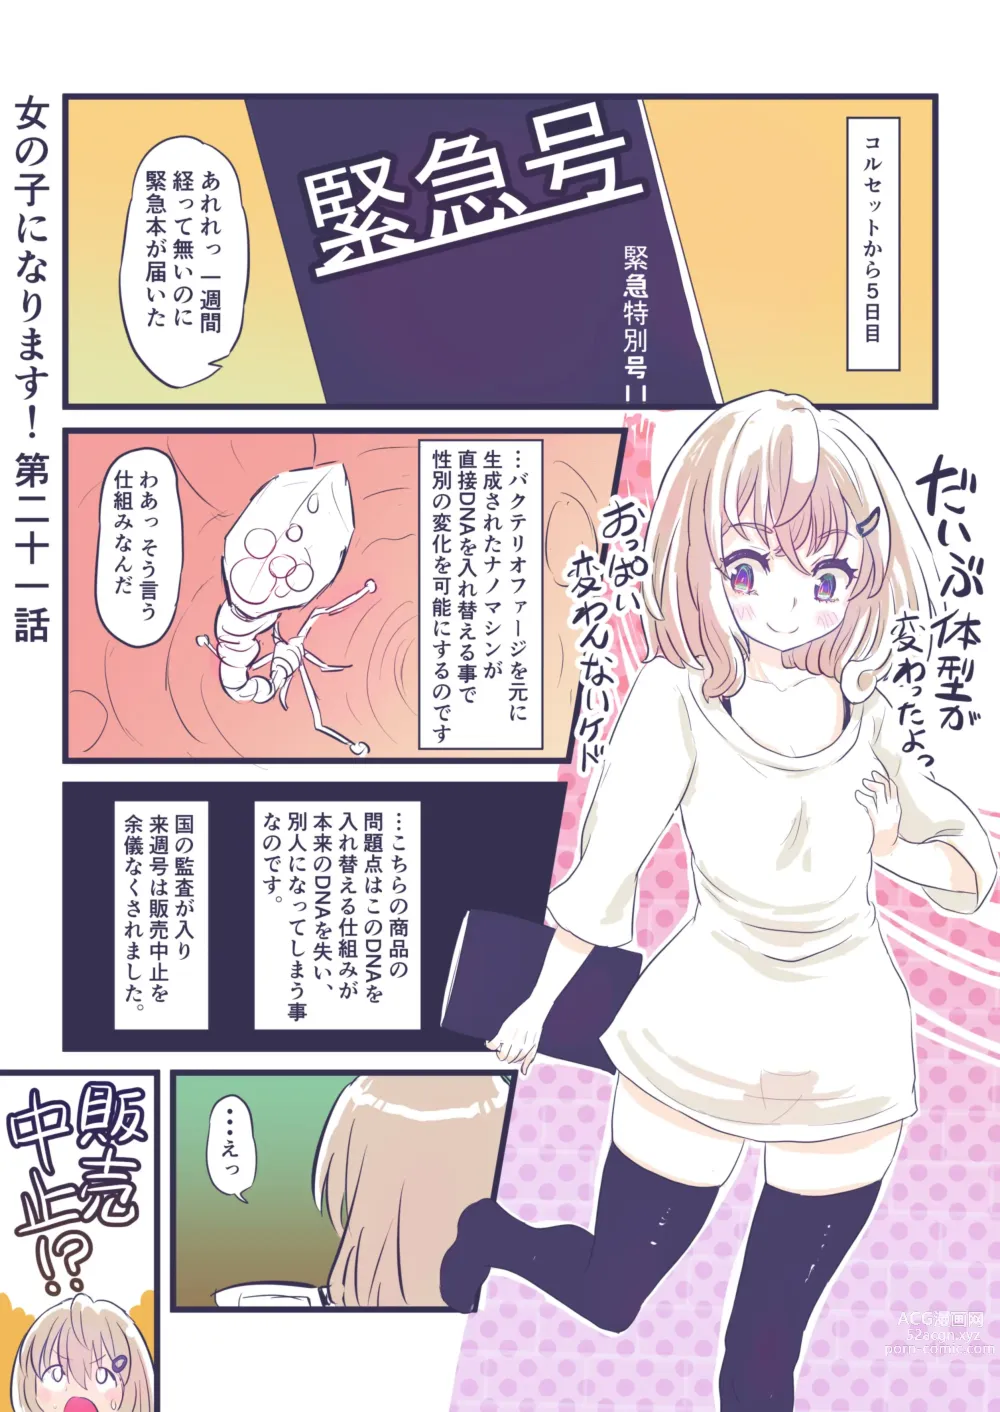 Page 28 of doujinshi Onnanoko ni Narimasu!